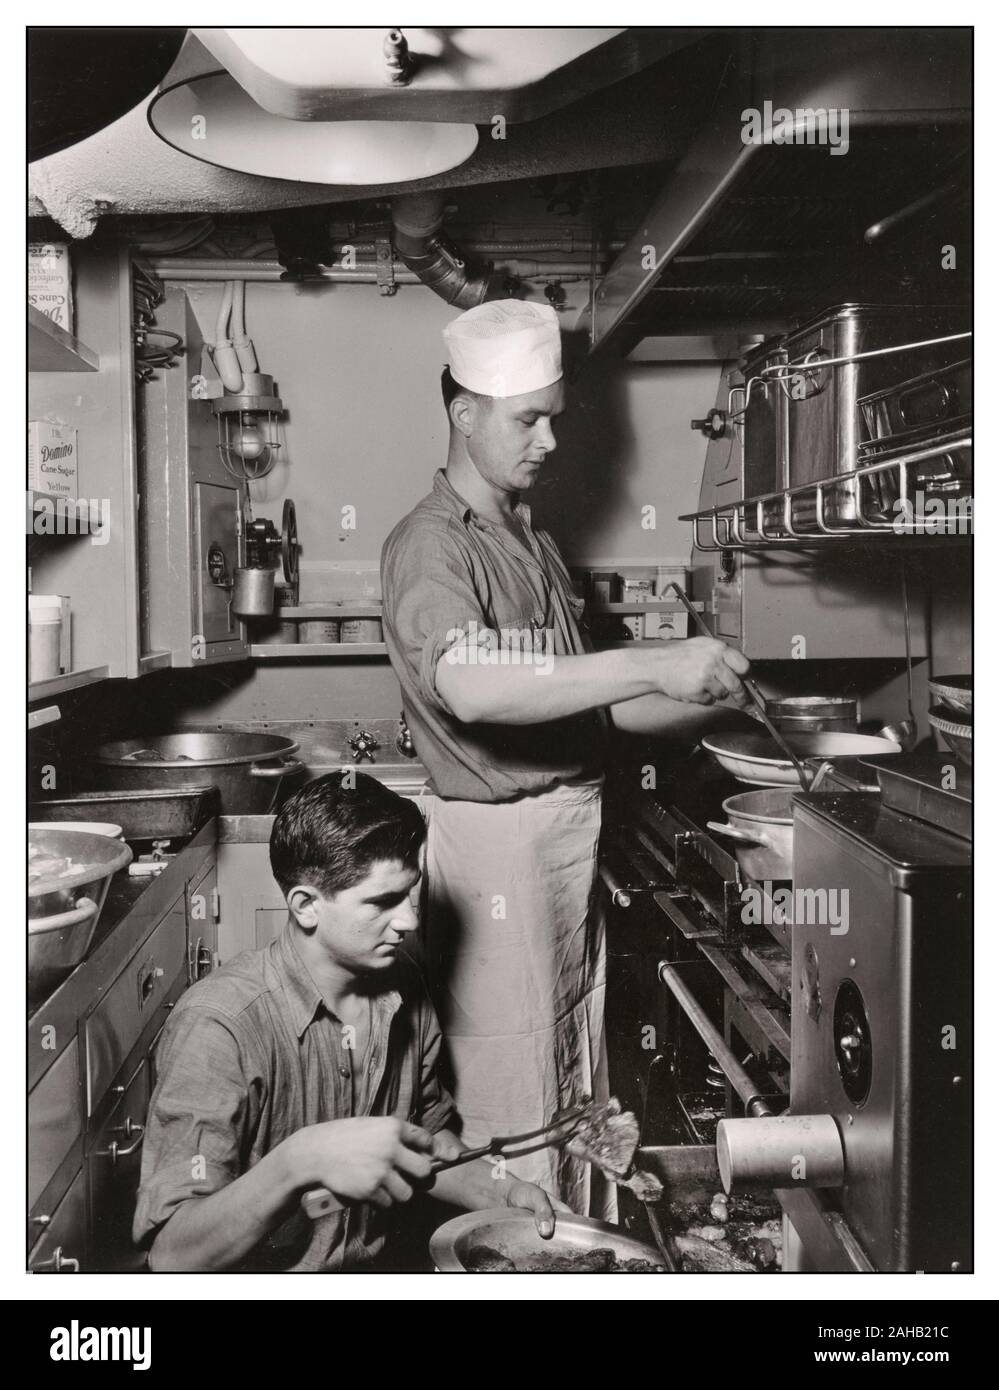 Weltkrieg USA amerikanische U-Boot Leben mit Kochen an Bord eines U-Bootes ladling, eine Mahlzeit mit einem neuen Edelstahl Utensil. August 1943 zwei Soldaten vorbereiten Essen in u-boot Kombüse. militärisches Personal Zweiten Weltkrieg WW2 US Navy U-Boot Kombüse Küche essen Vorbereitung Stockfoto